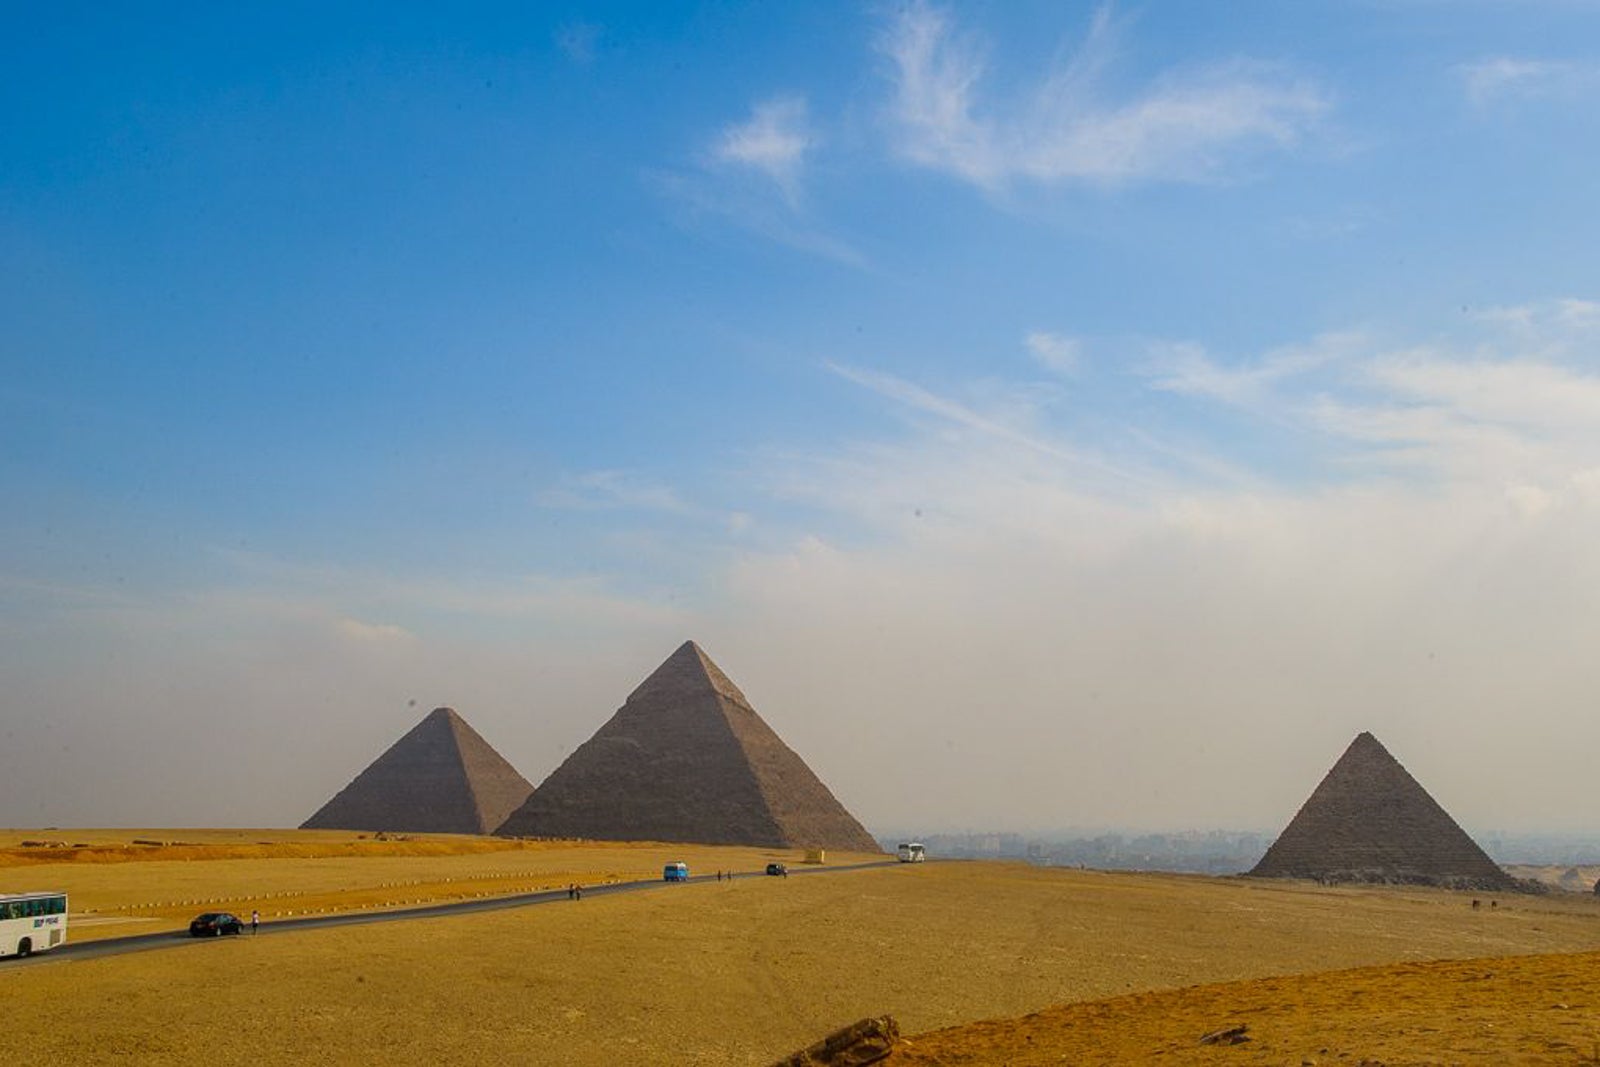 travelling in egypt reddit